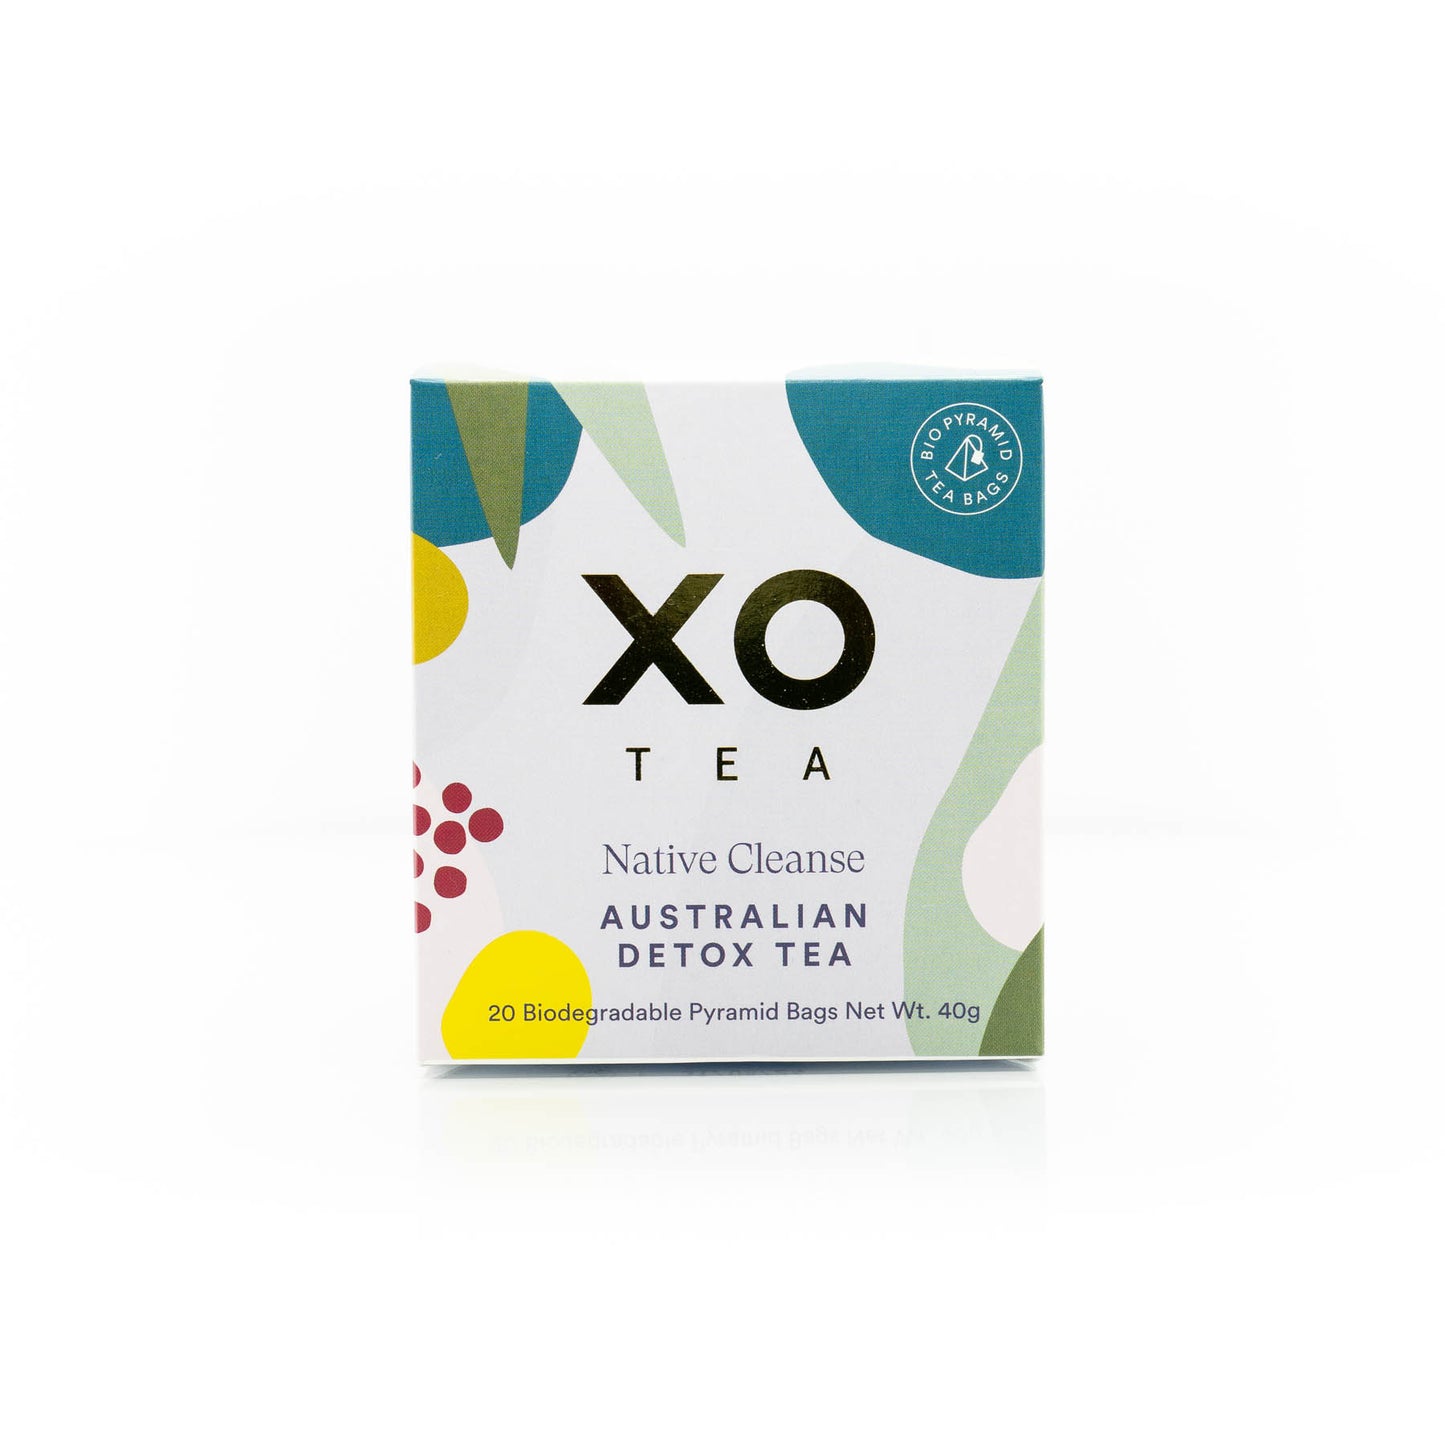 XO Tea - Native Cleanse Australian Detox Tea